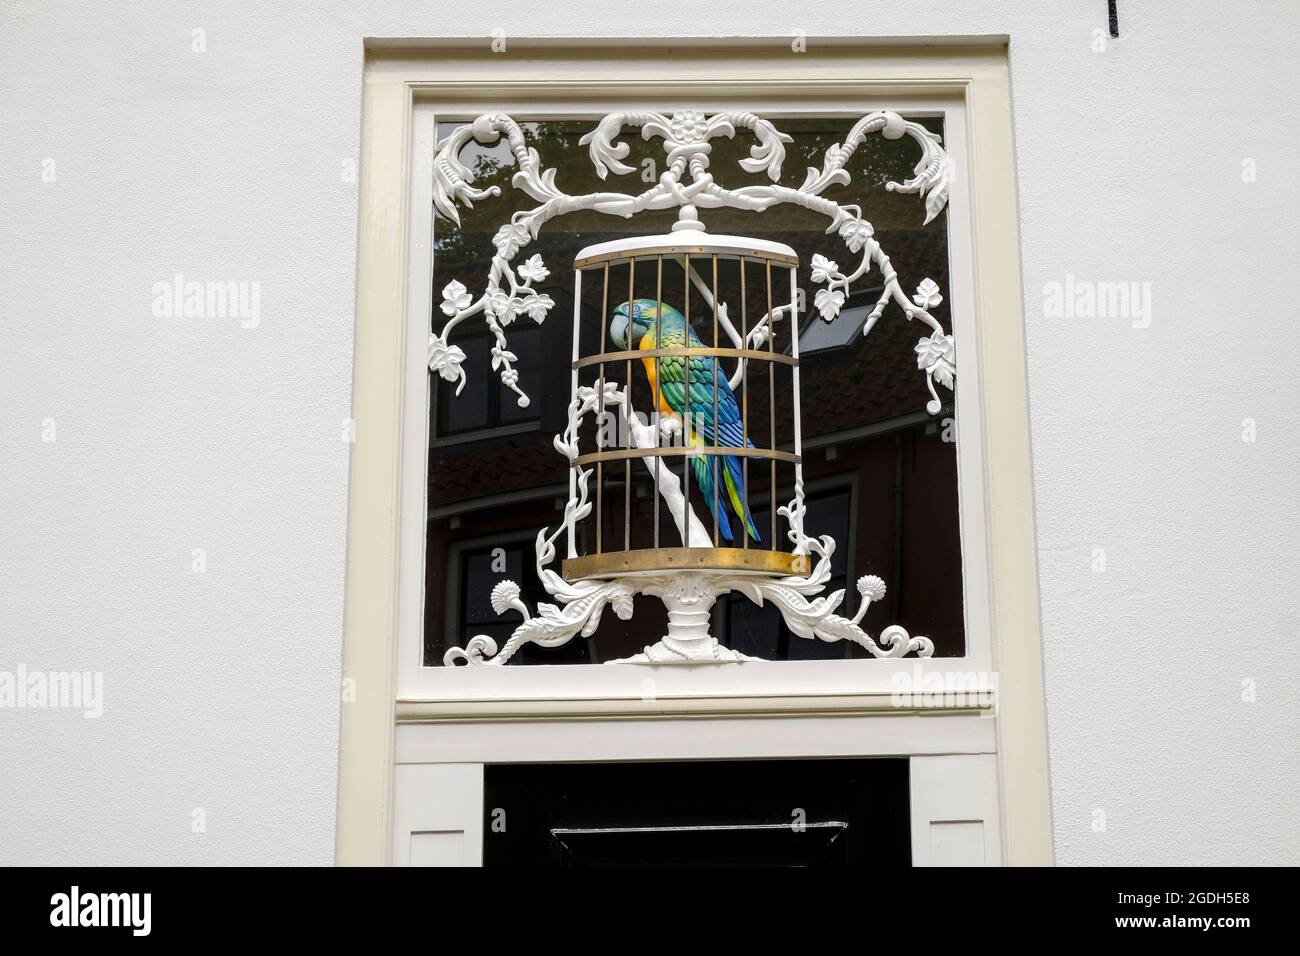 NLD, Niederlande, Overijssel, Deventer, 12.08.2021: Papageienfigurur ueber der Eingangstuer des Hauses Bergstraat 19/21 einer ehemaligen Bierbrauerei im Foto Stock